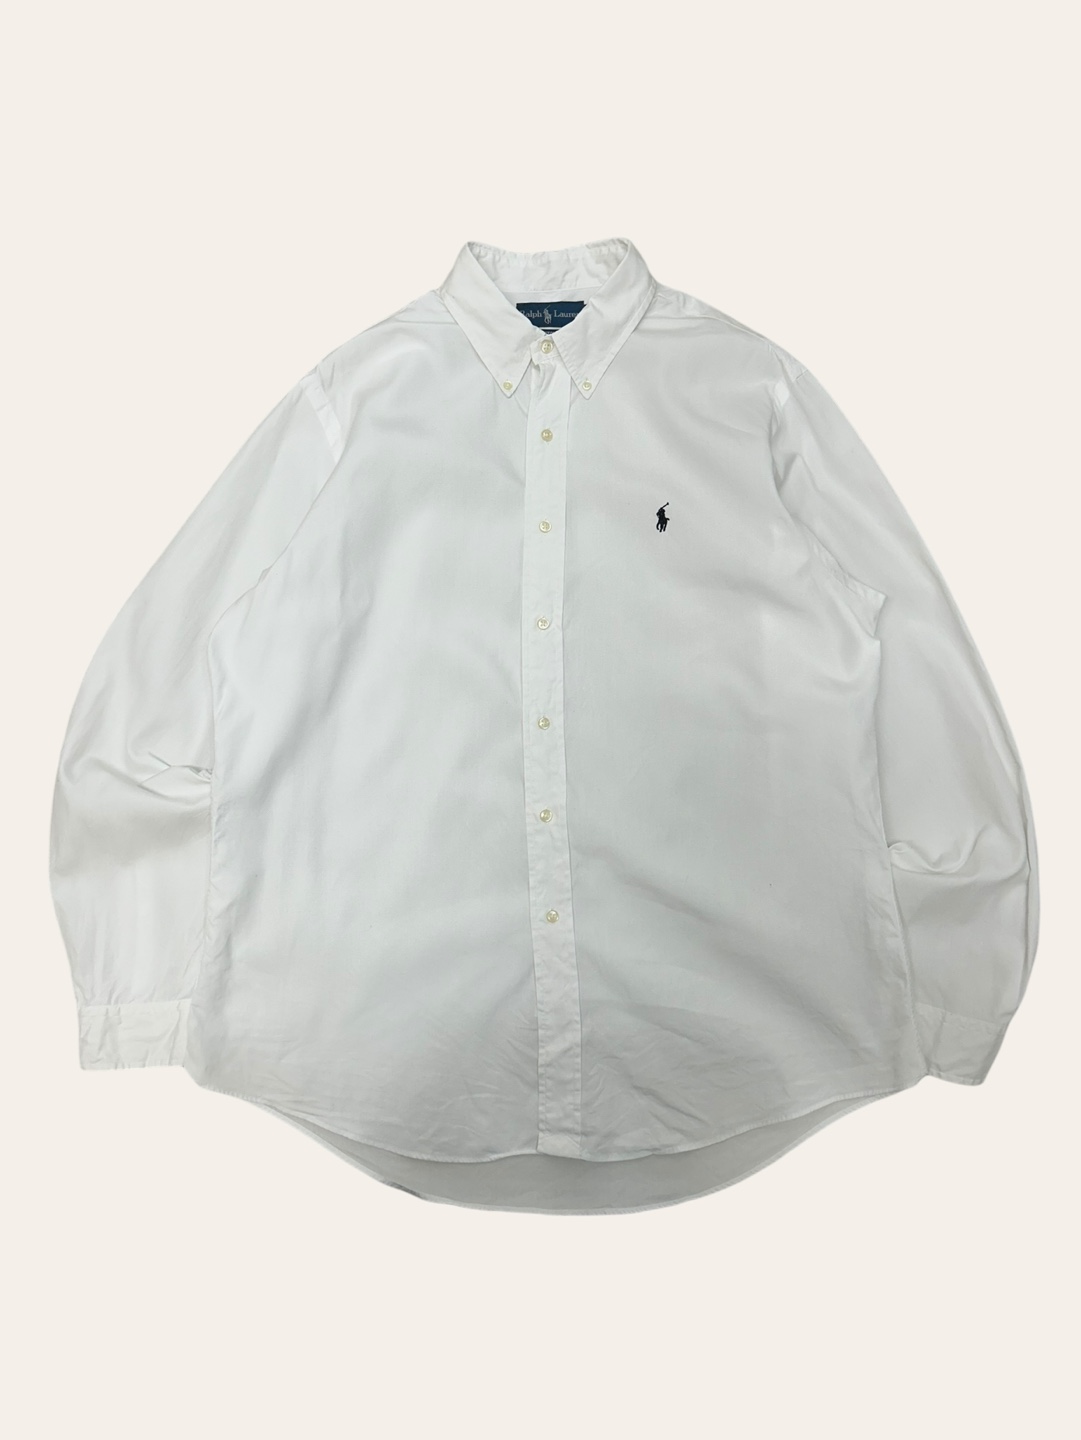 (From USA)Polo ralph lauren white poplin shirt XL